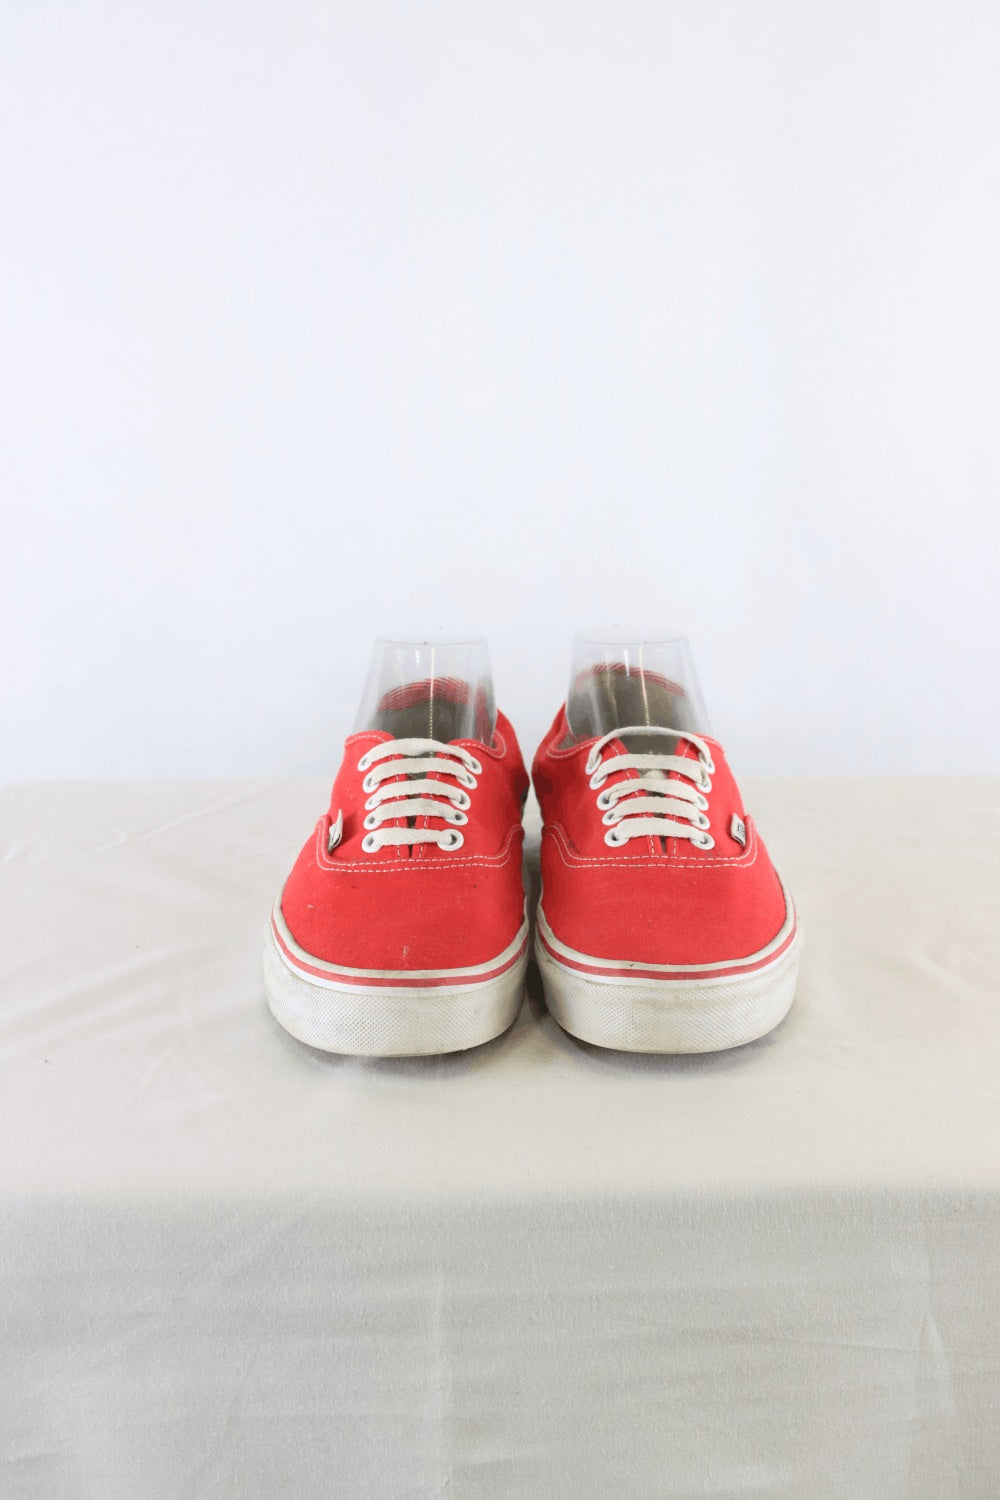 Vans Red Sneakers 9